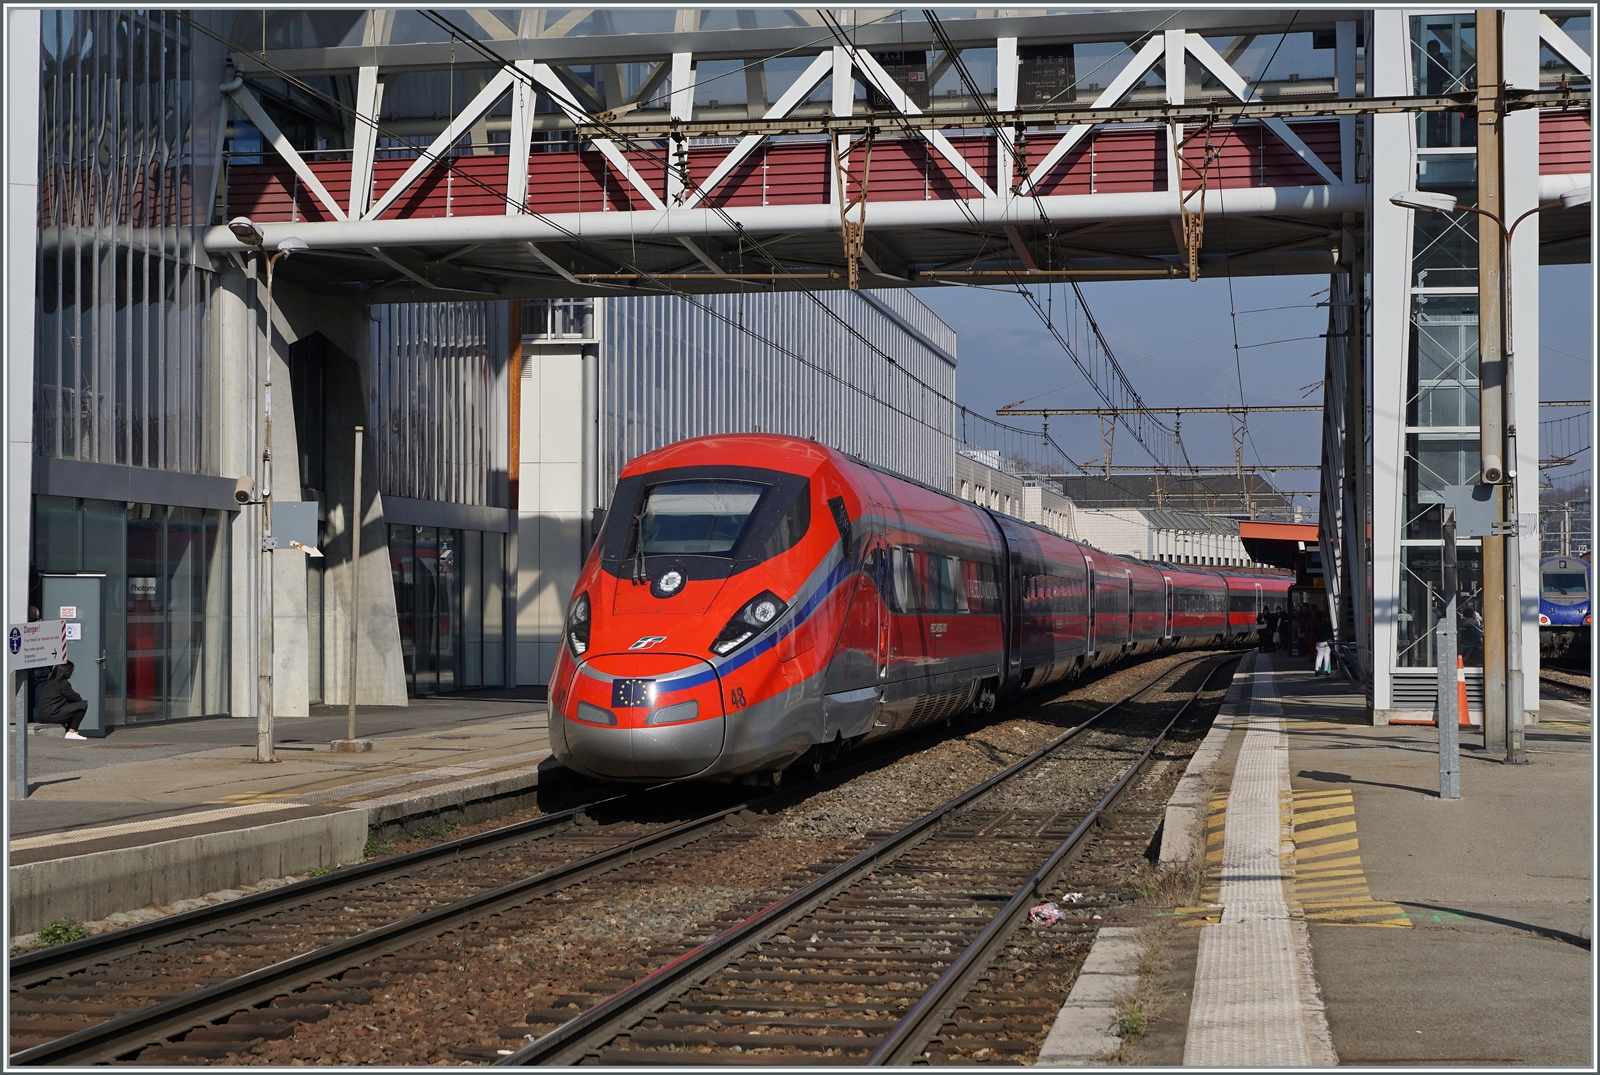 Der Trenitalia FS ETR 400 048 ist als FR 9291 von Paris Gare de Lyon nach Milano Centrale unterwegs und hält hier kurz in Chambéry-Challes-les-Eaux.

20. März 2022